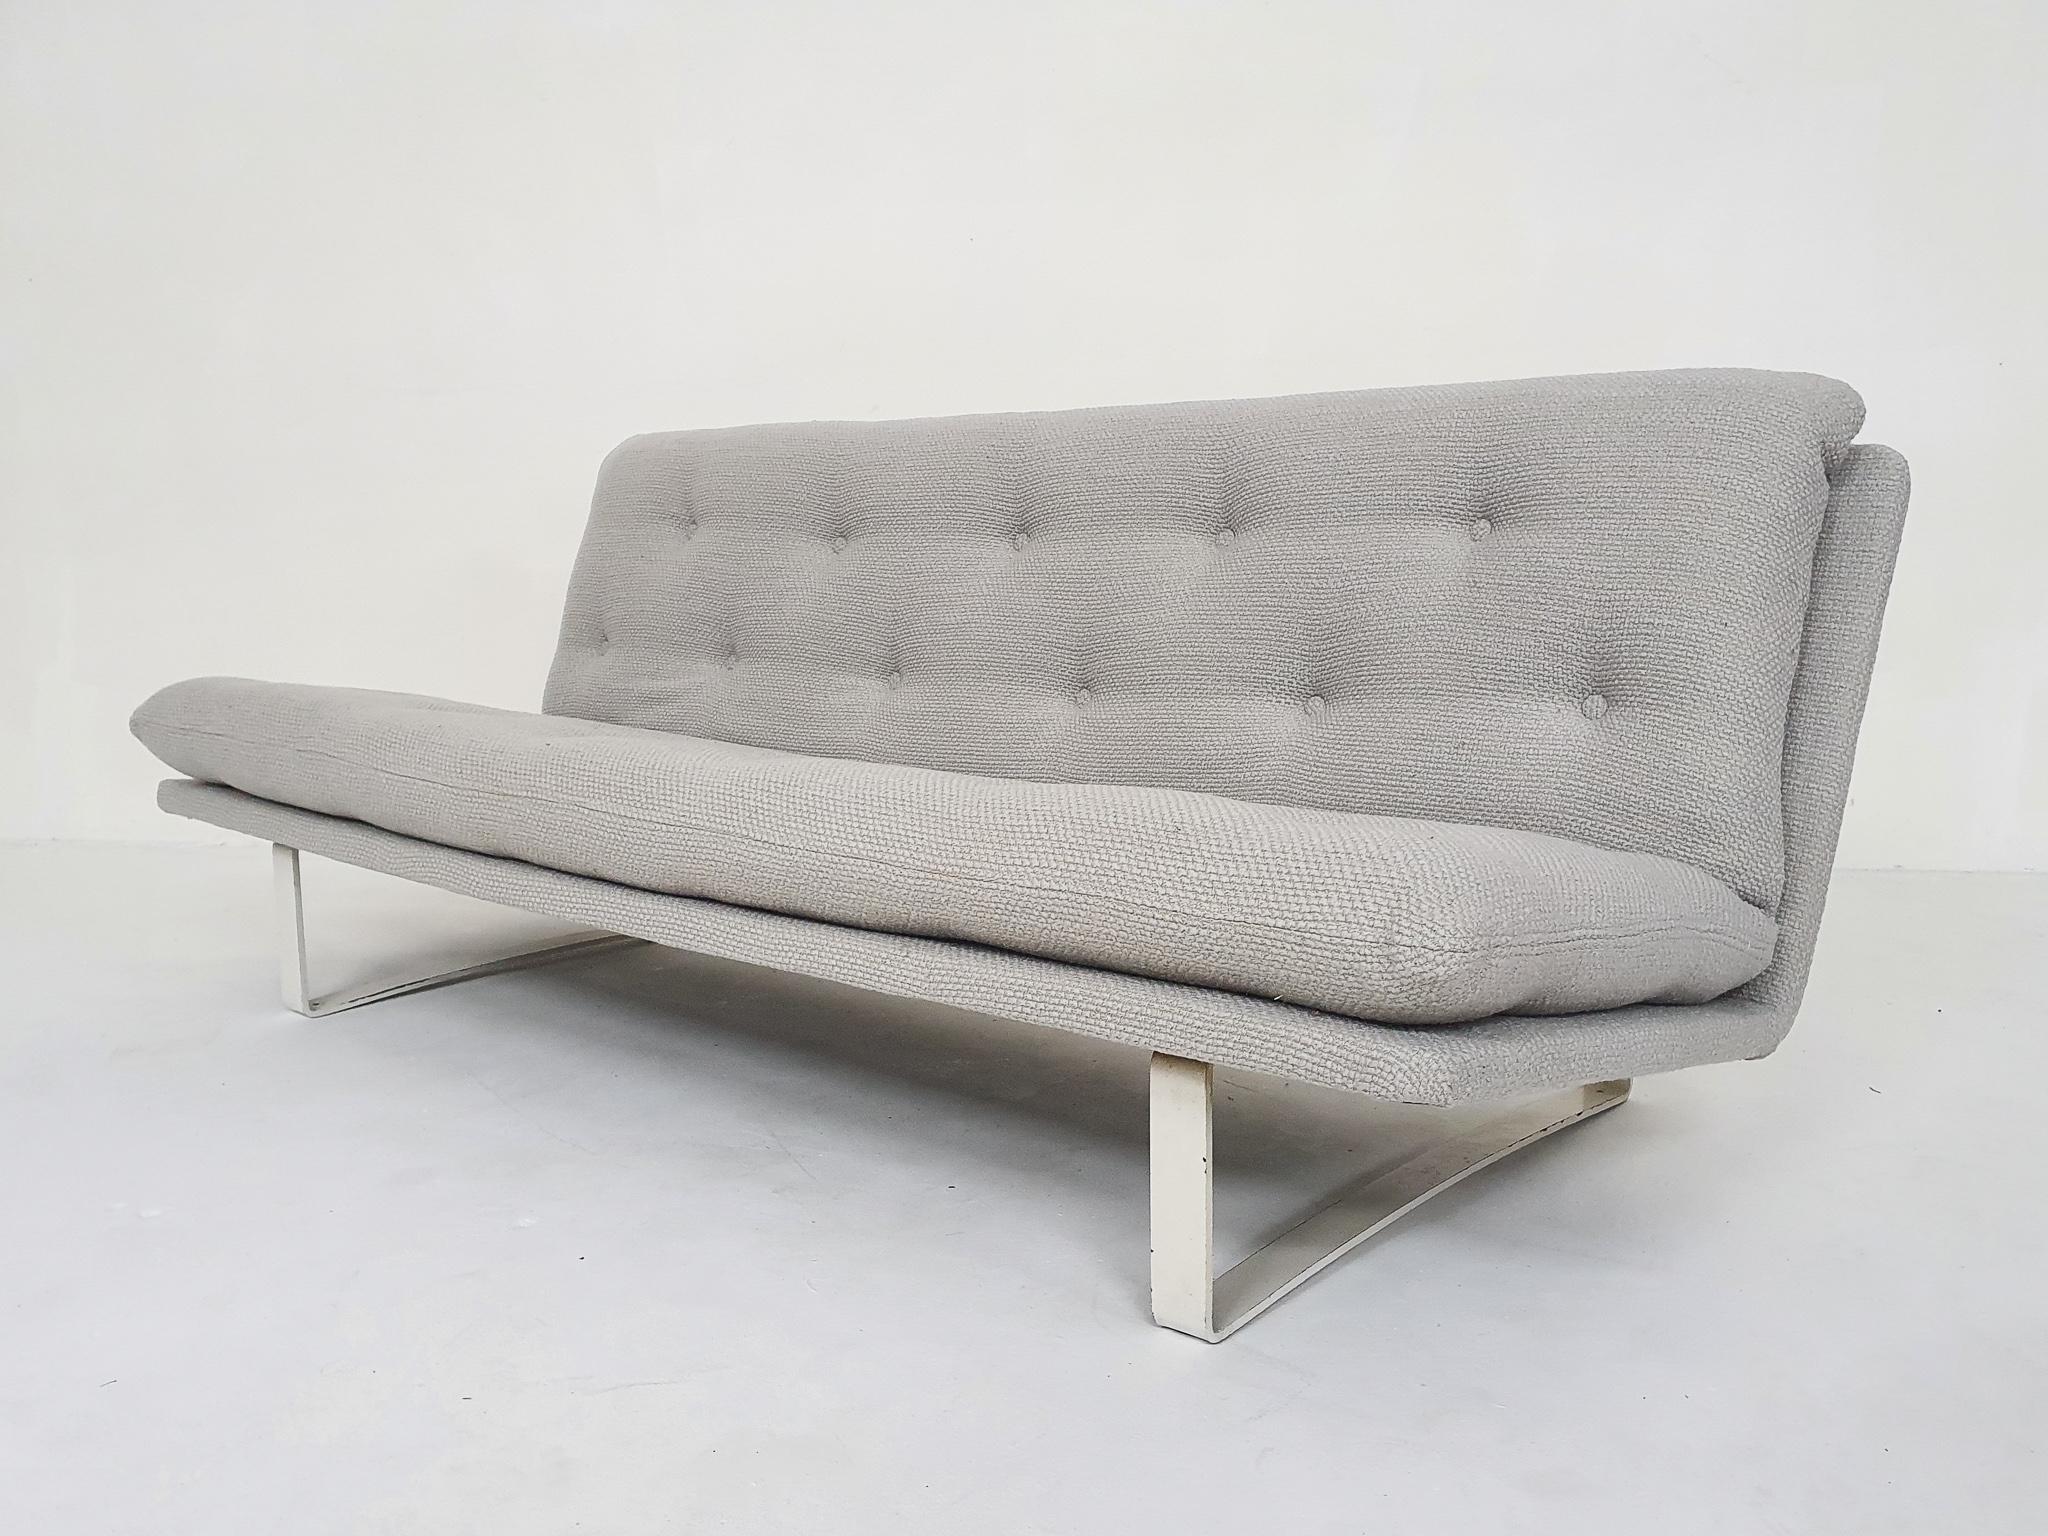 Design-Sofa von Kho Liang Ie für Artifort, Niederlande 1968.
Der weiße Rahmen hat einige Gebrauchsspuren, kann aber auf Wunsch neu lackiert werden.
Wir haben das Sofa mit einem hellgrauen Wollstoff (100% natürlich) bezogen

Kho Liang Le
Kho Liang Ie